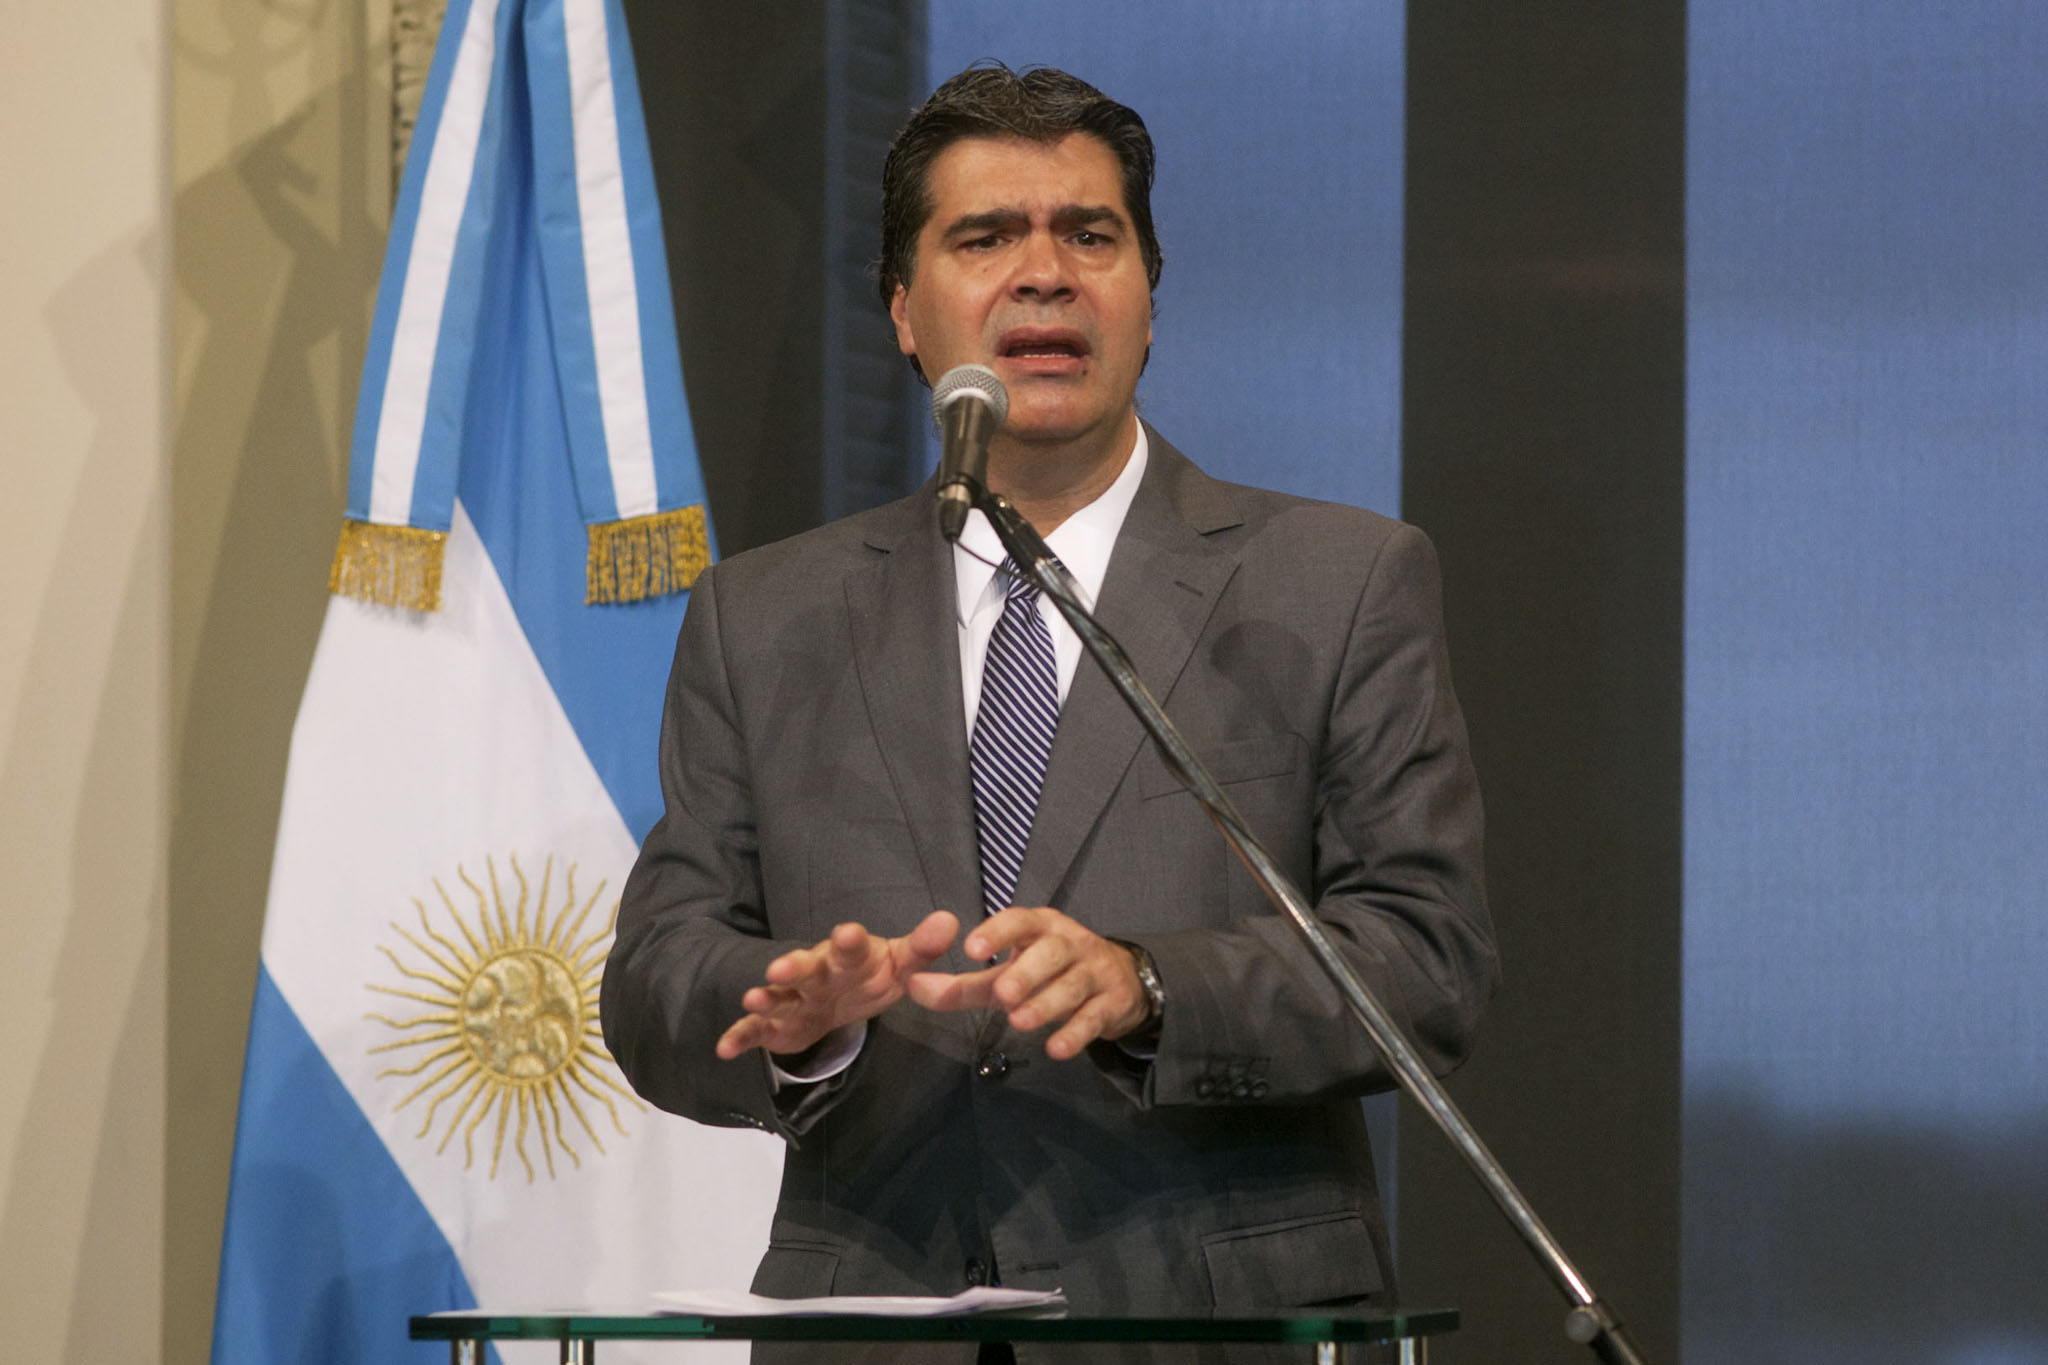 El Banco Central revocó la autorización de representación del Bank of New York en Argentina, anunció el jefe de Gabinete